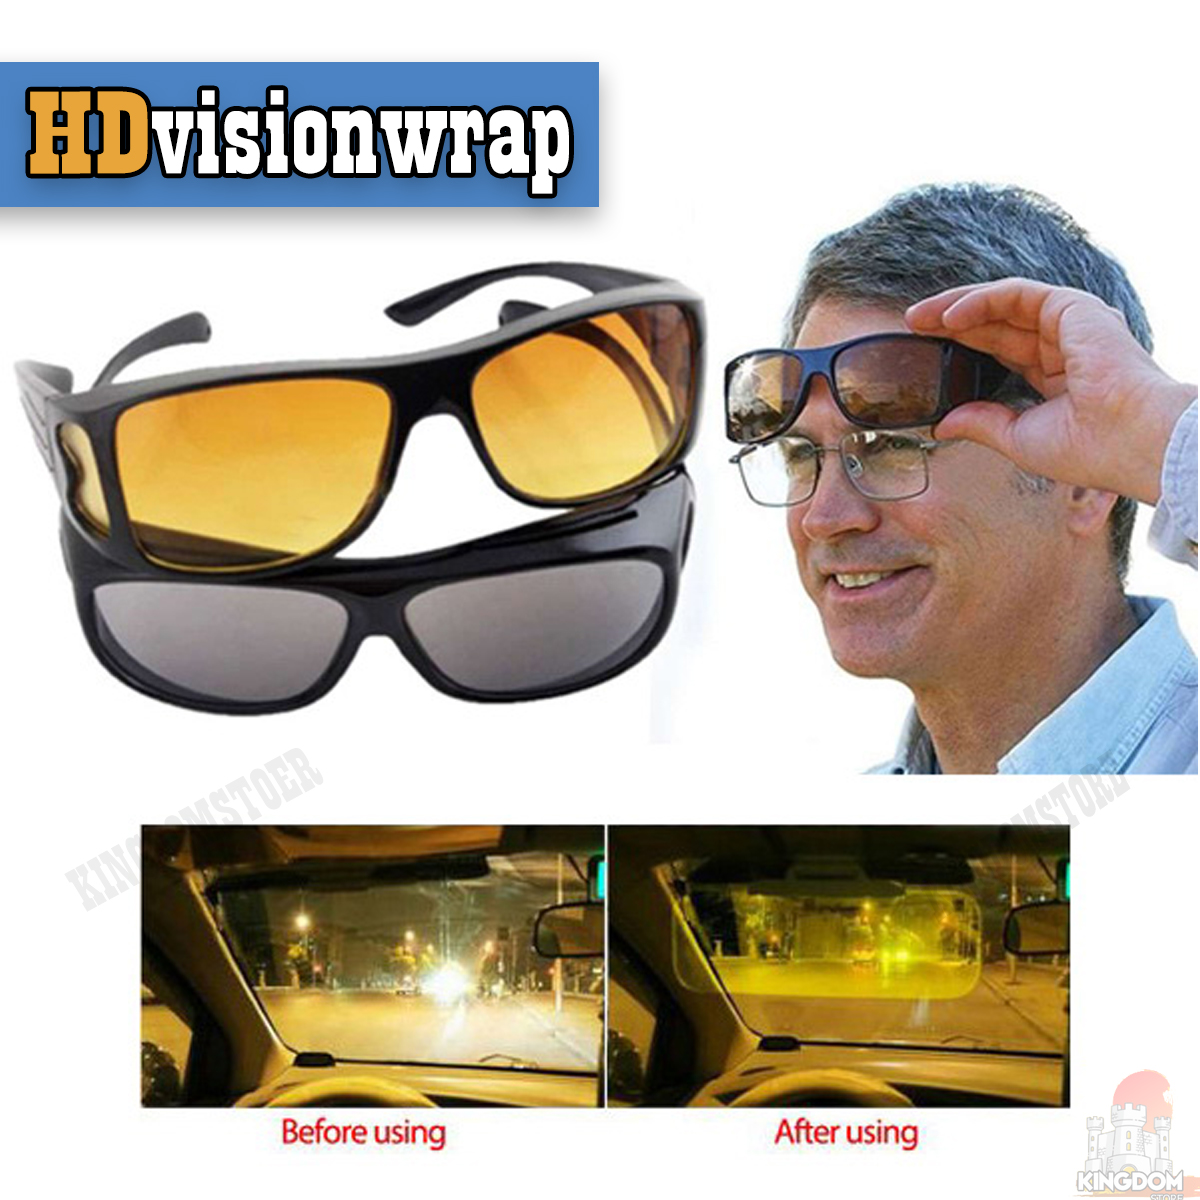 HD vision wrapแว่นกันแดด แว่นใส่ขับรถ แว่นกรองแสง แว่นกันแดด/ขับรถ กลางวัน-กลางคืน HD Vision 2ชิ้น/ชุด